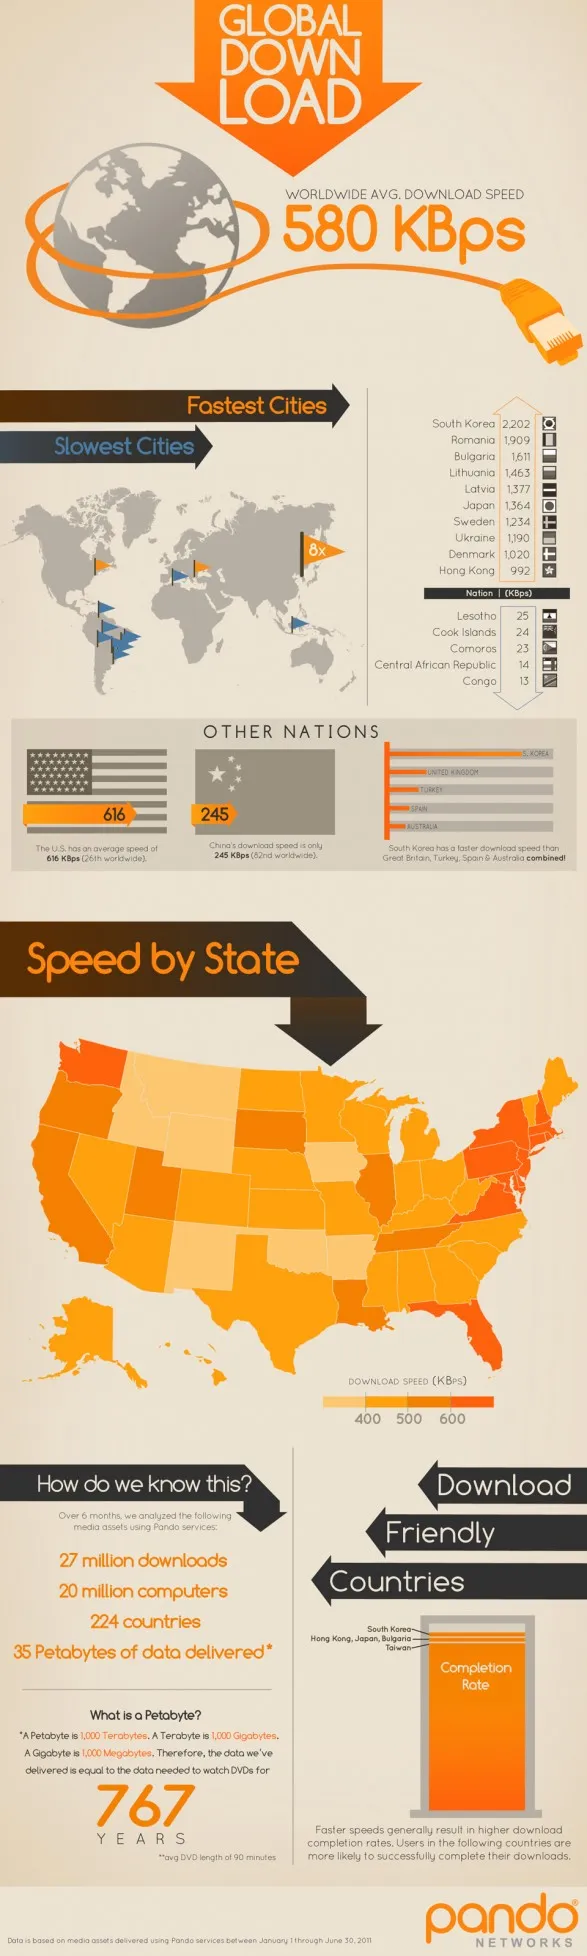 Ποια είναι η ταχύτητα downloading στον κόσμο; (infographic)